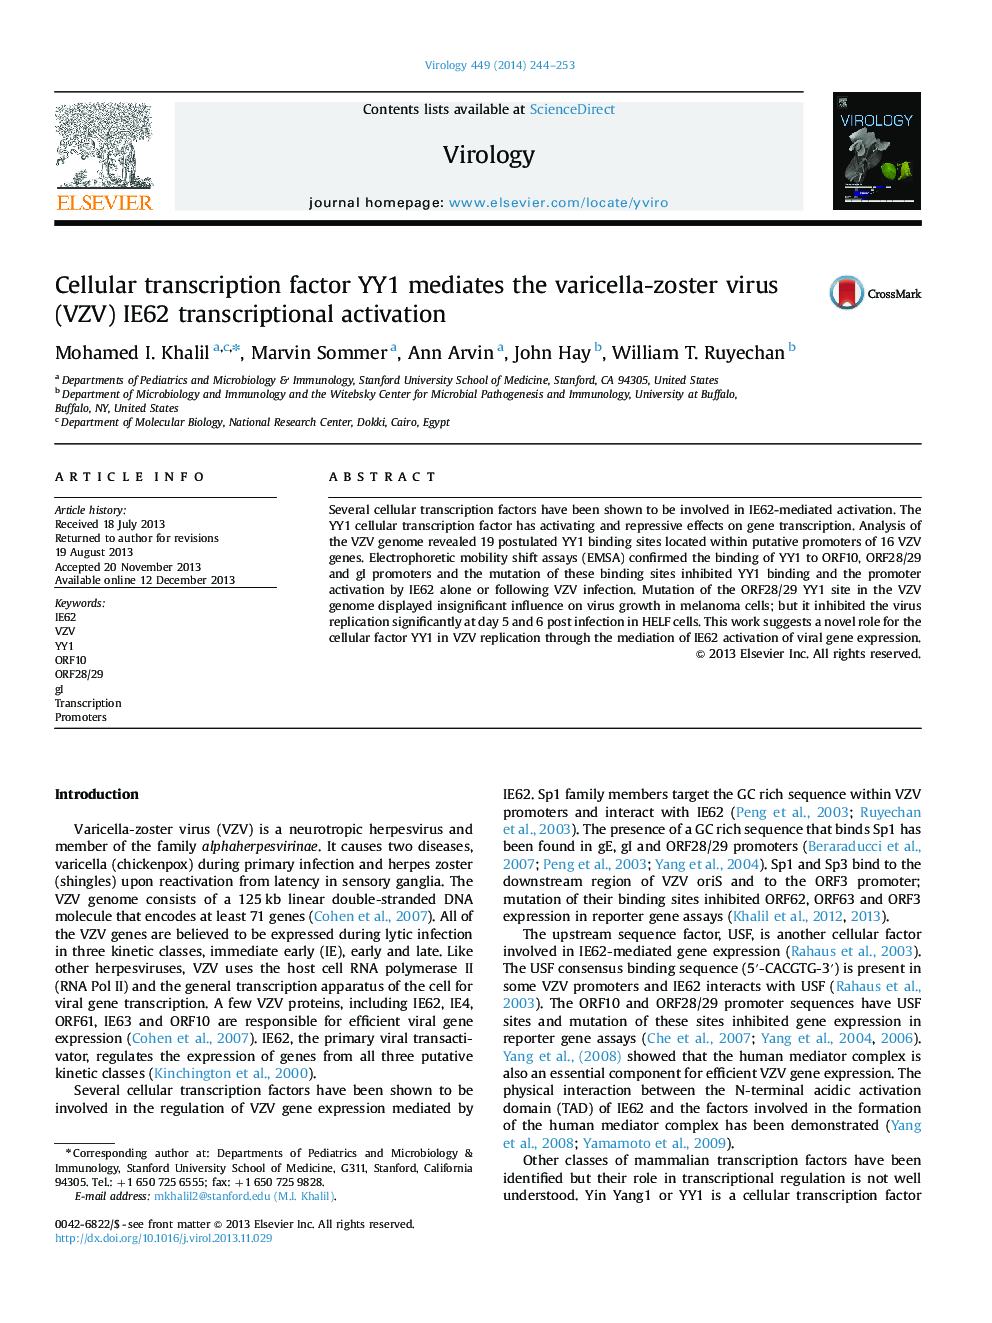 Cellular transcription factor YY1 mediates the varicella-zoster virus (VZV) IE62 transcriptional activation